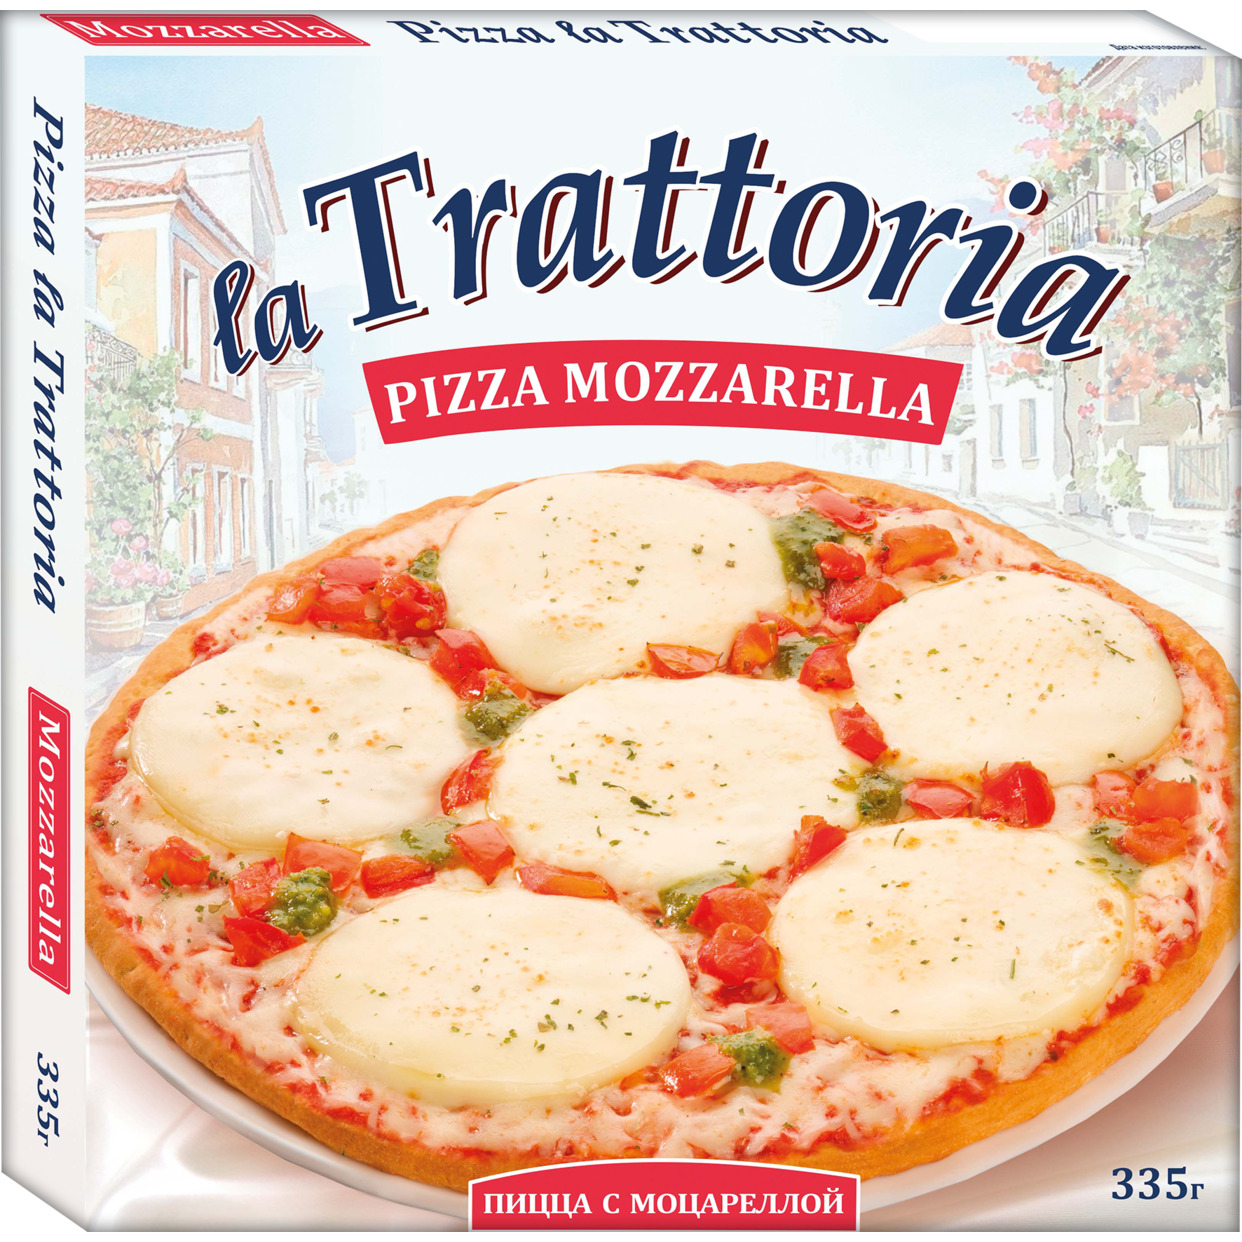 Пицца "Цезарь" La Trattoria с моцареллой 335г по акции в Пятерочке